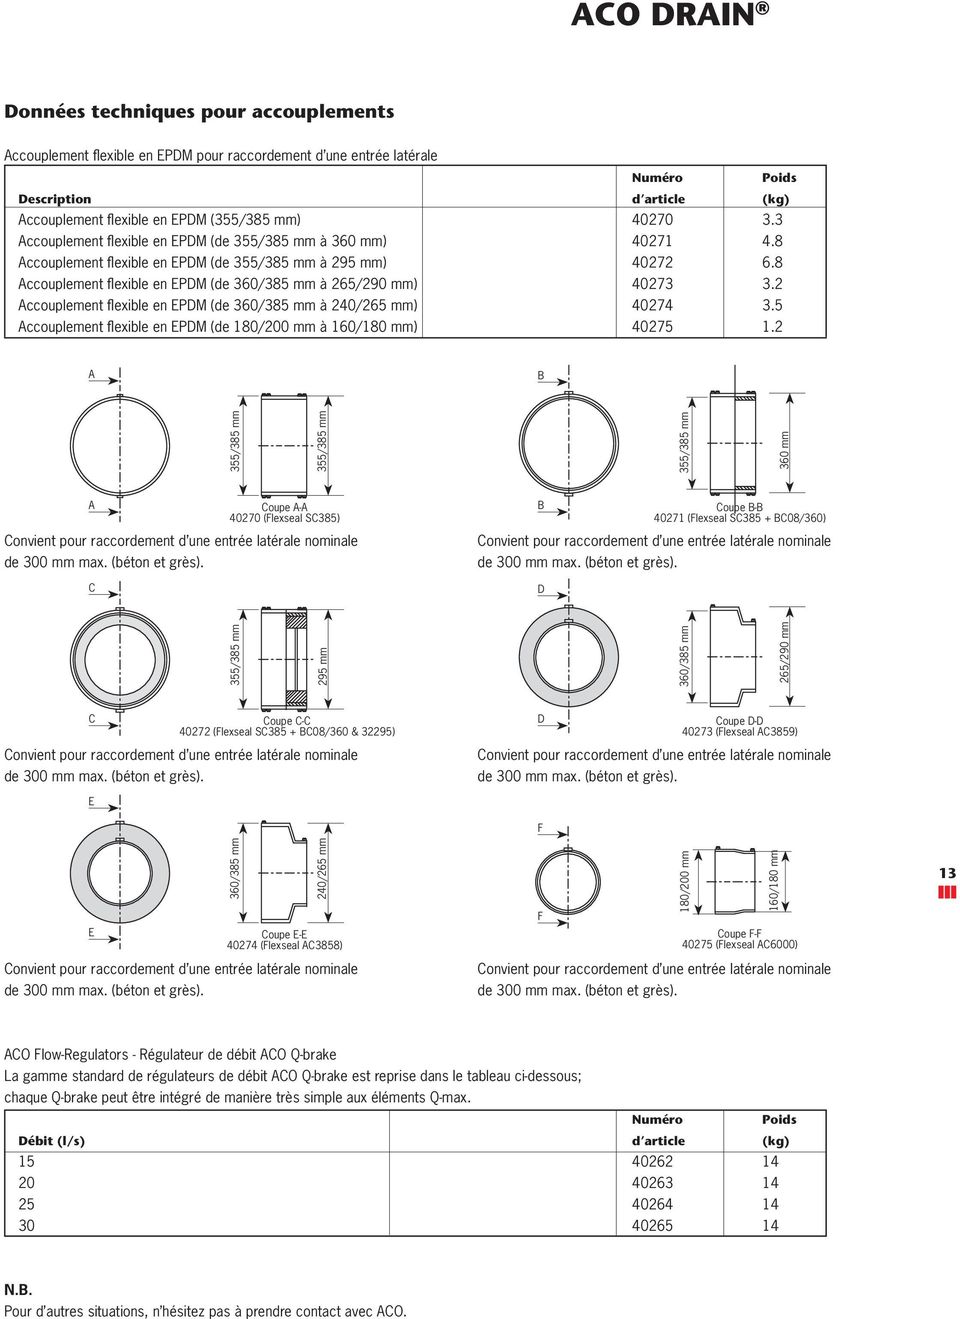 8 Accouplement fl exible en EPDM (de 360/385 mm à 265/290 mm) 40273 3.2 Accouplement fl exible en EPDM (de 360/385 mm à 240/265 mm) 40274 3.